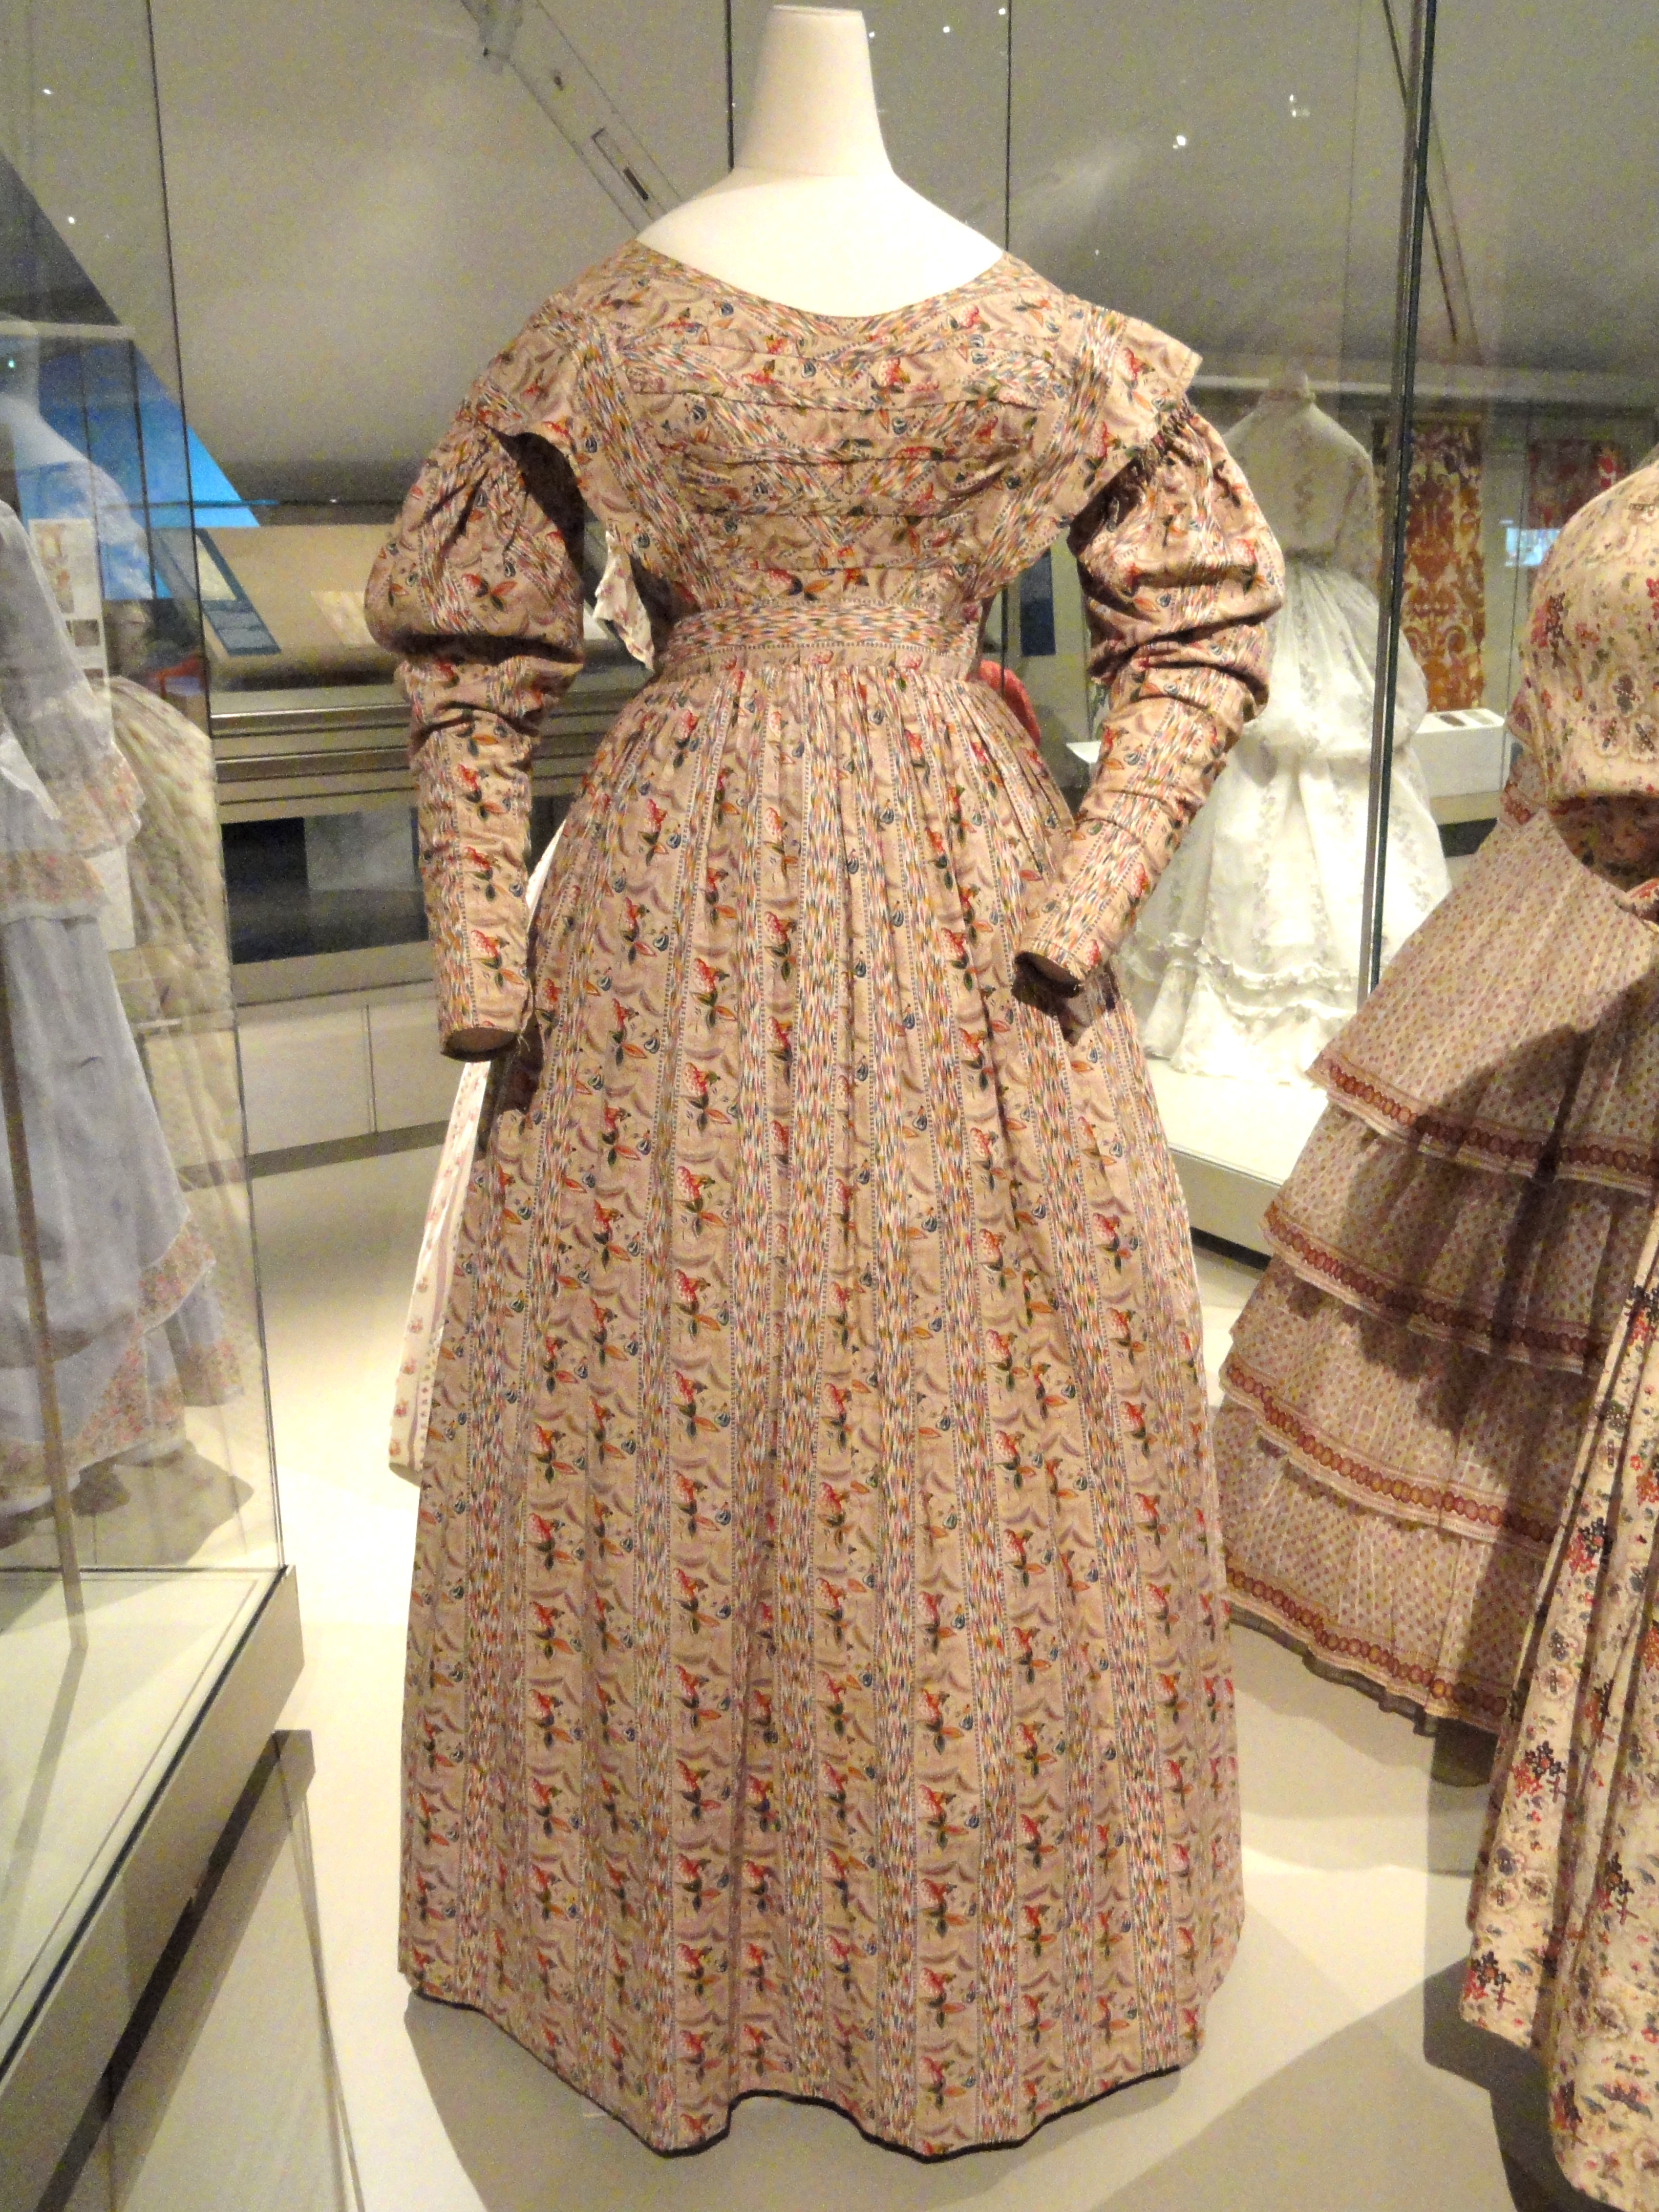 Woman's Informal Dress · Women Fashion in 1800s